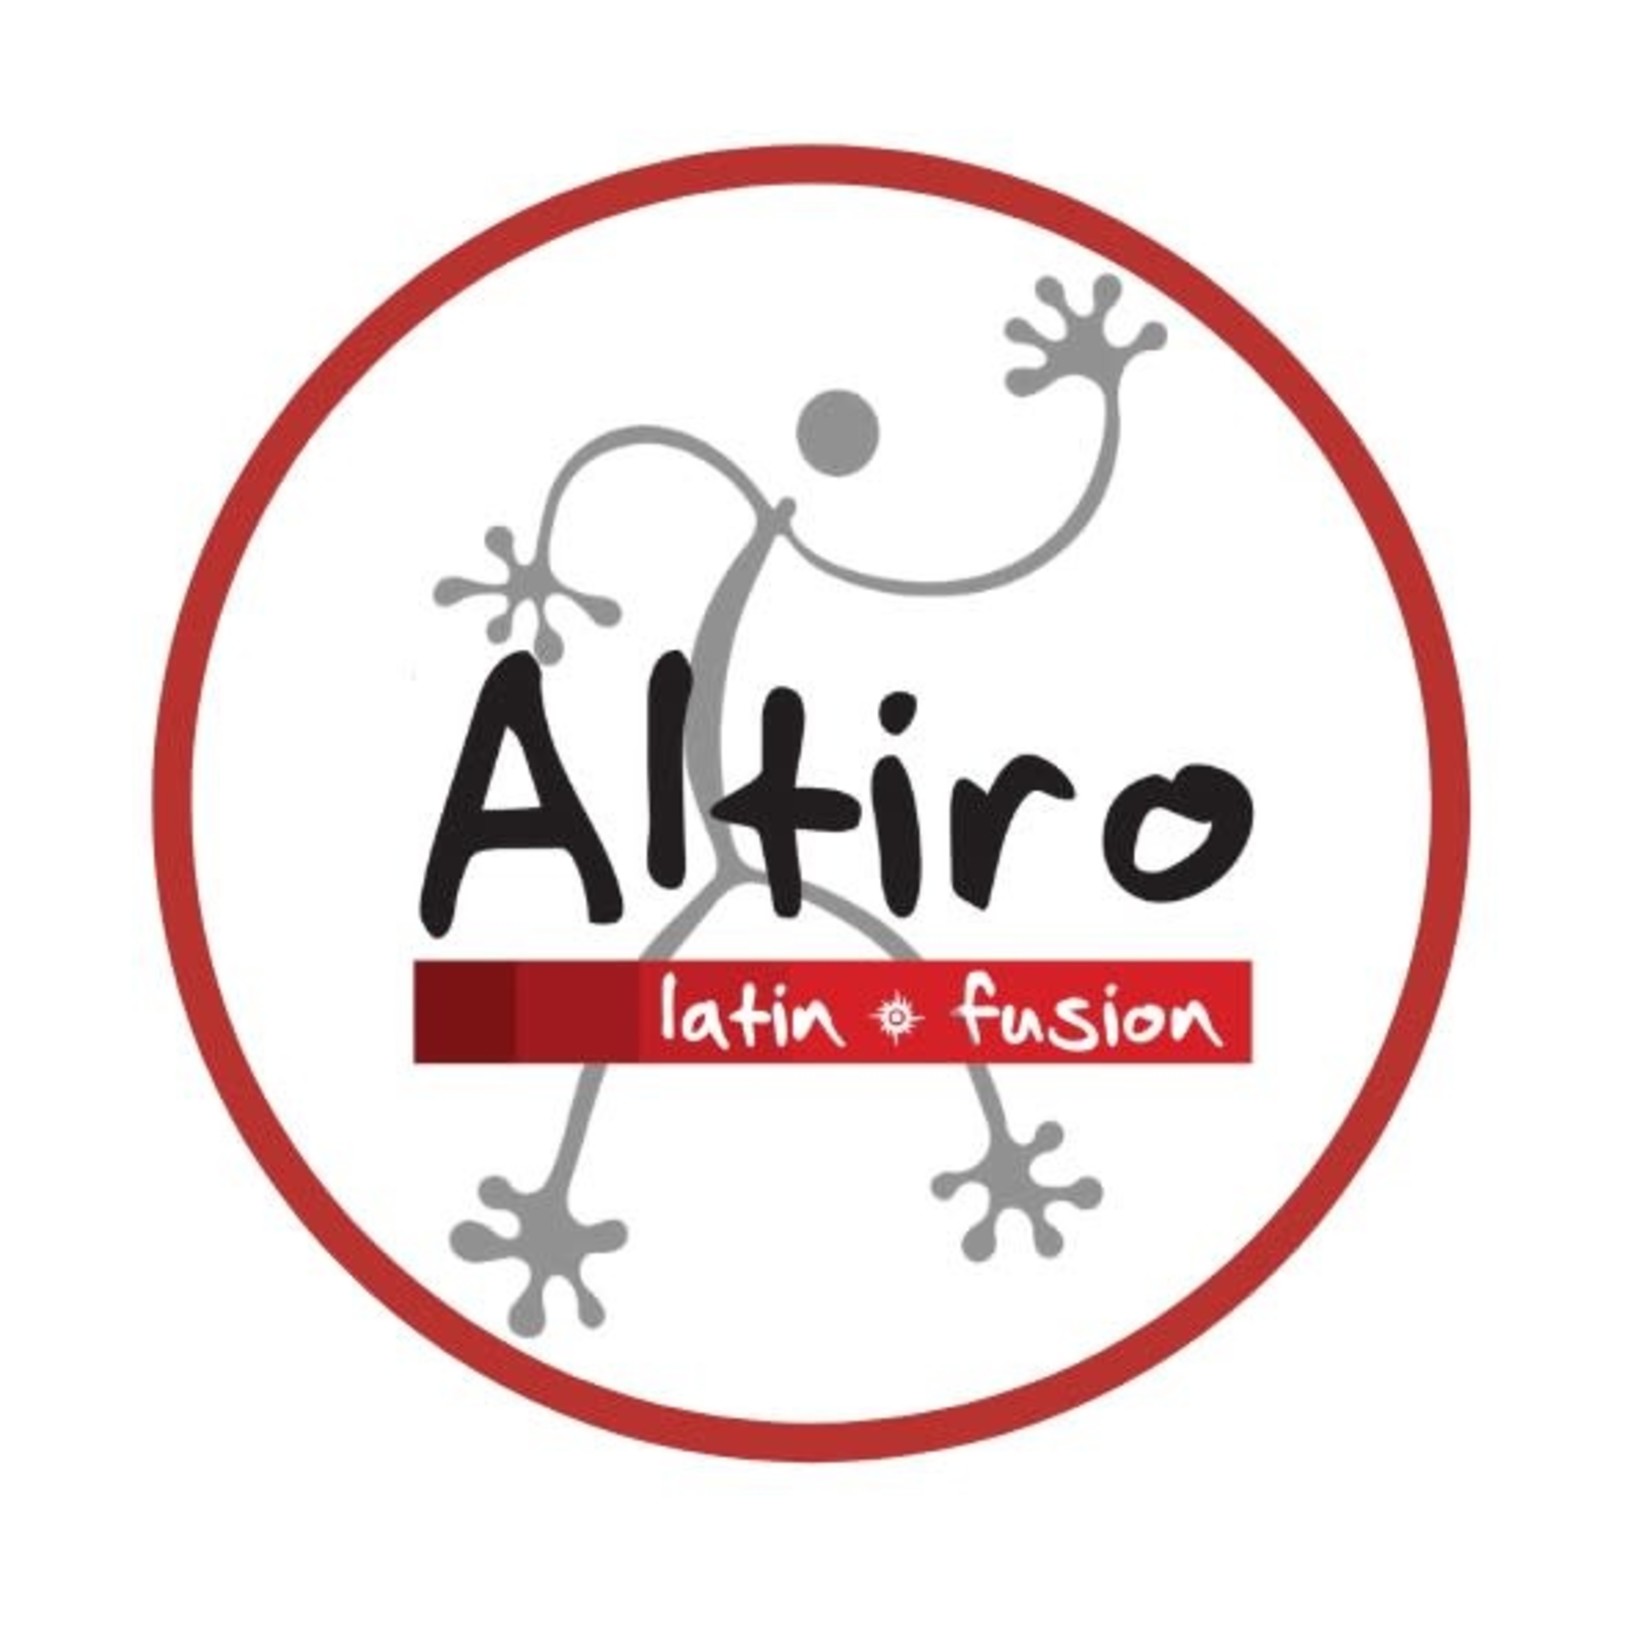 Altiro Latin Fusion-Geneva/Aurora/Wheaton Altiro Latin Fusion-Geneva/Aurora/Wheaton $10.00 Dining Certificate